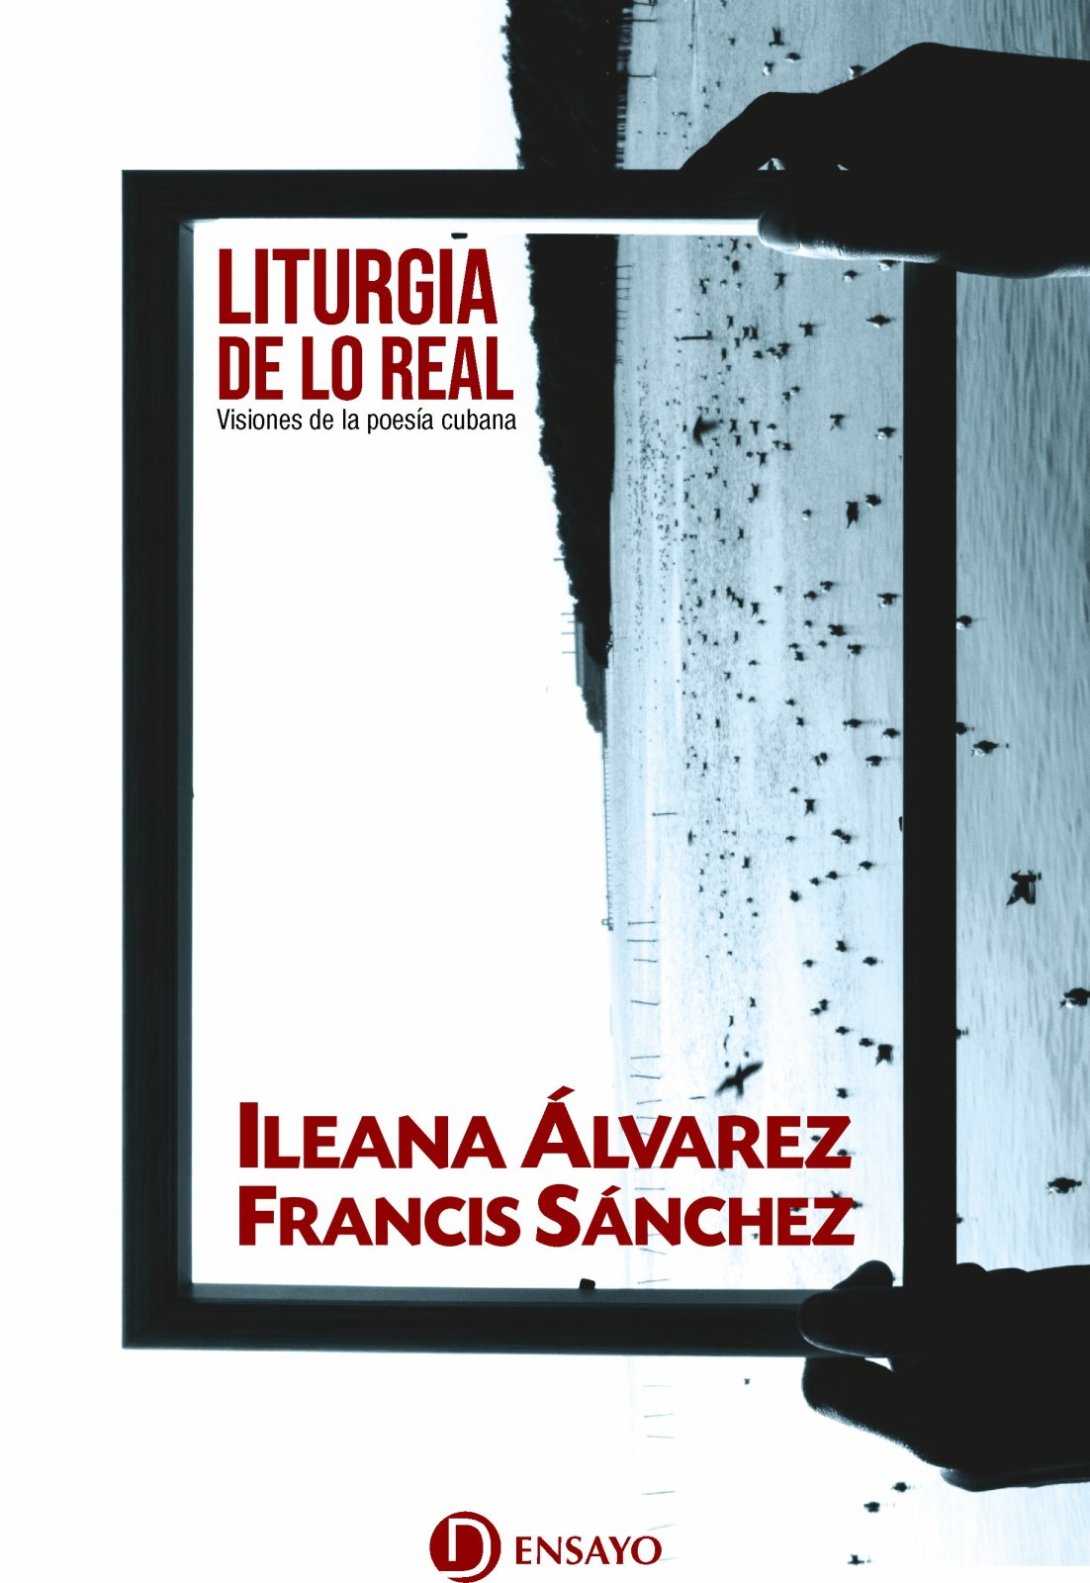 Portada de "Liturgia de lo real", de Ileana Álvarez y Francis Sánchez.